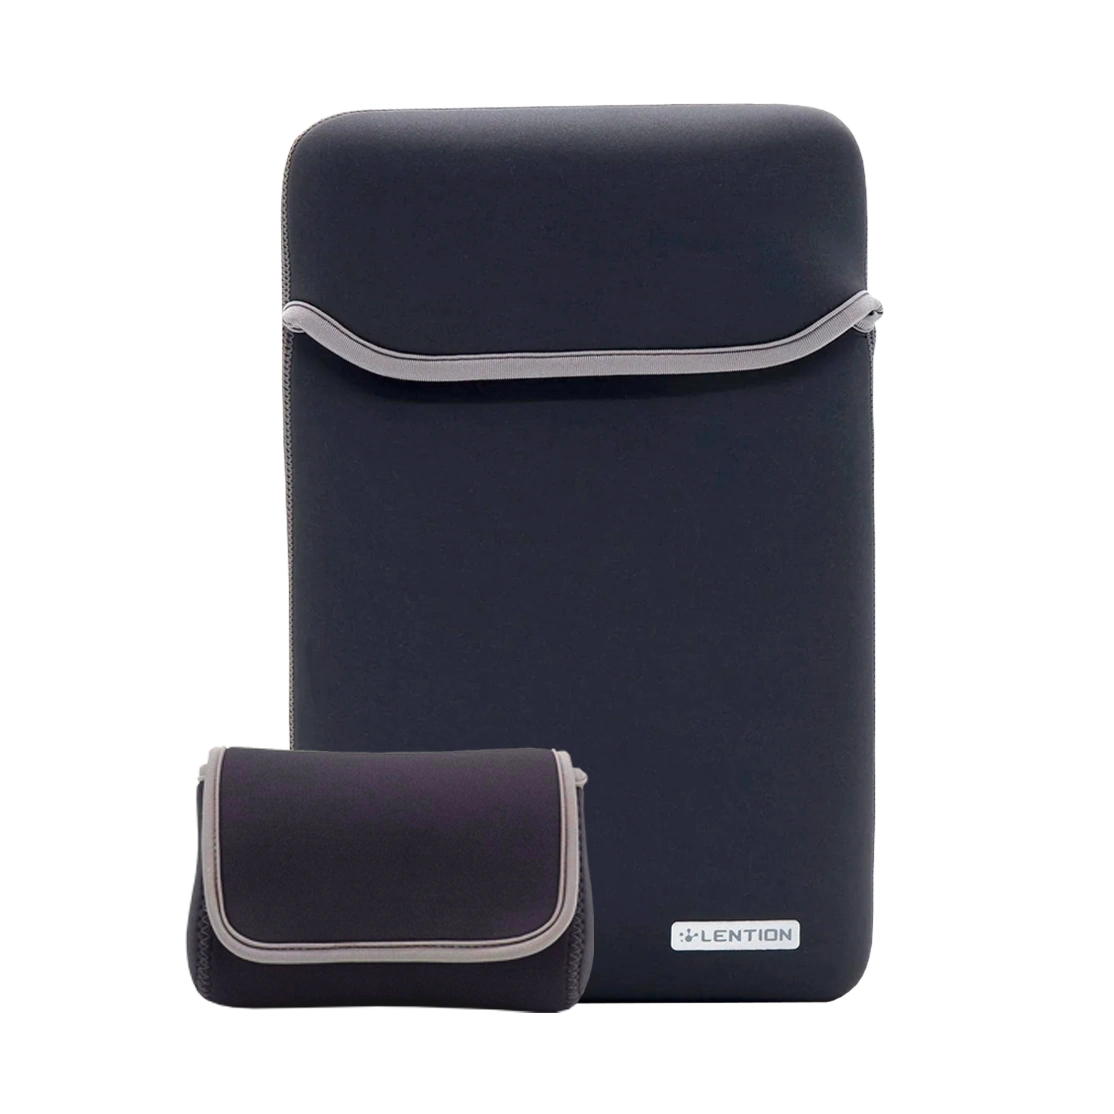 Lention Neoprene Sleeve Case for Macbook 15-inch PCB-B375